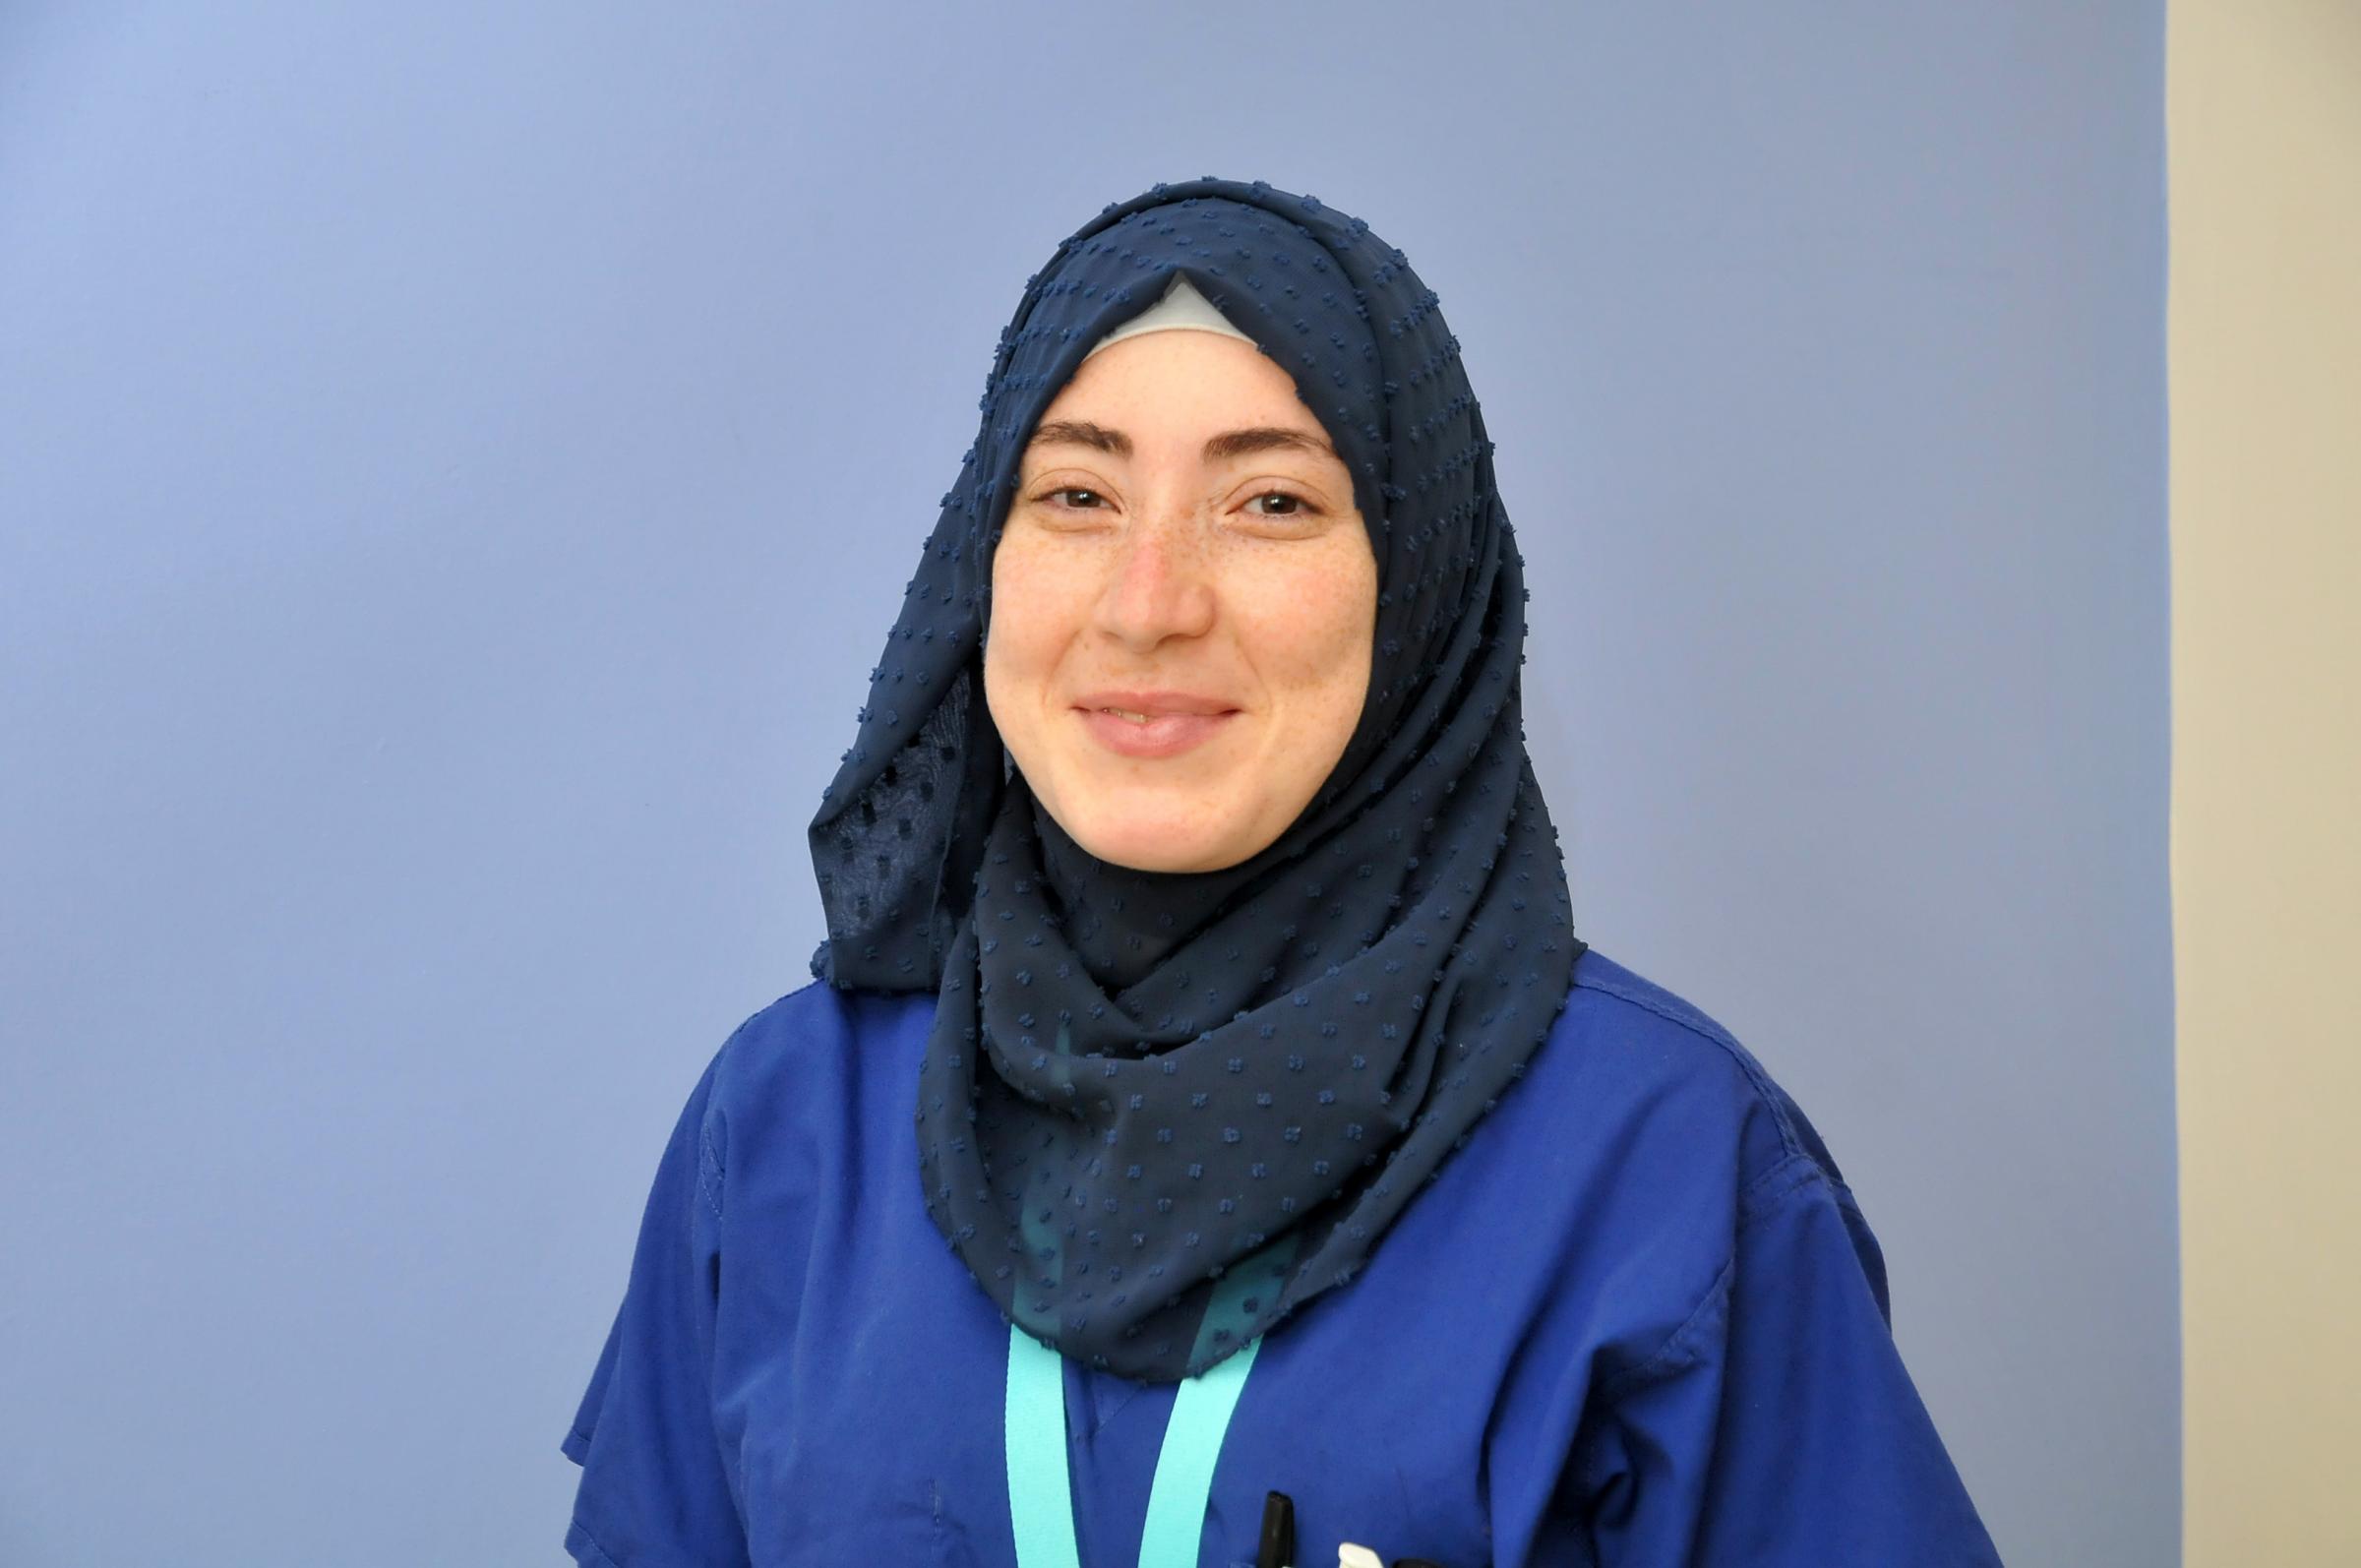 Staff nurse Israa Mostafa